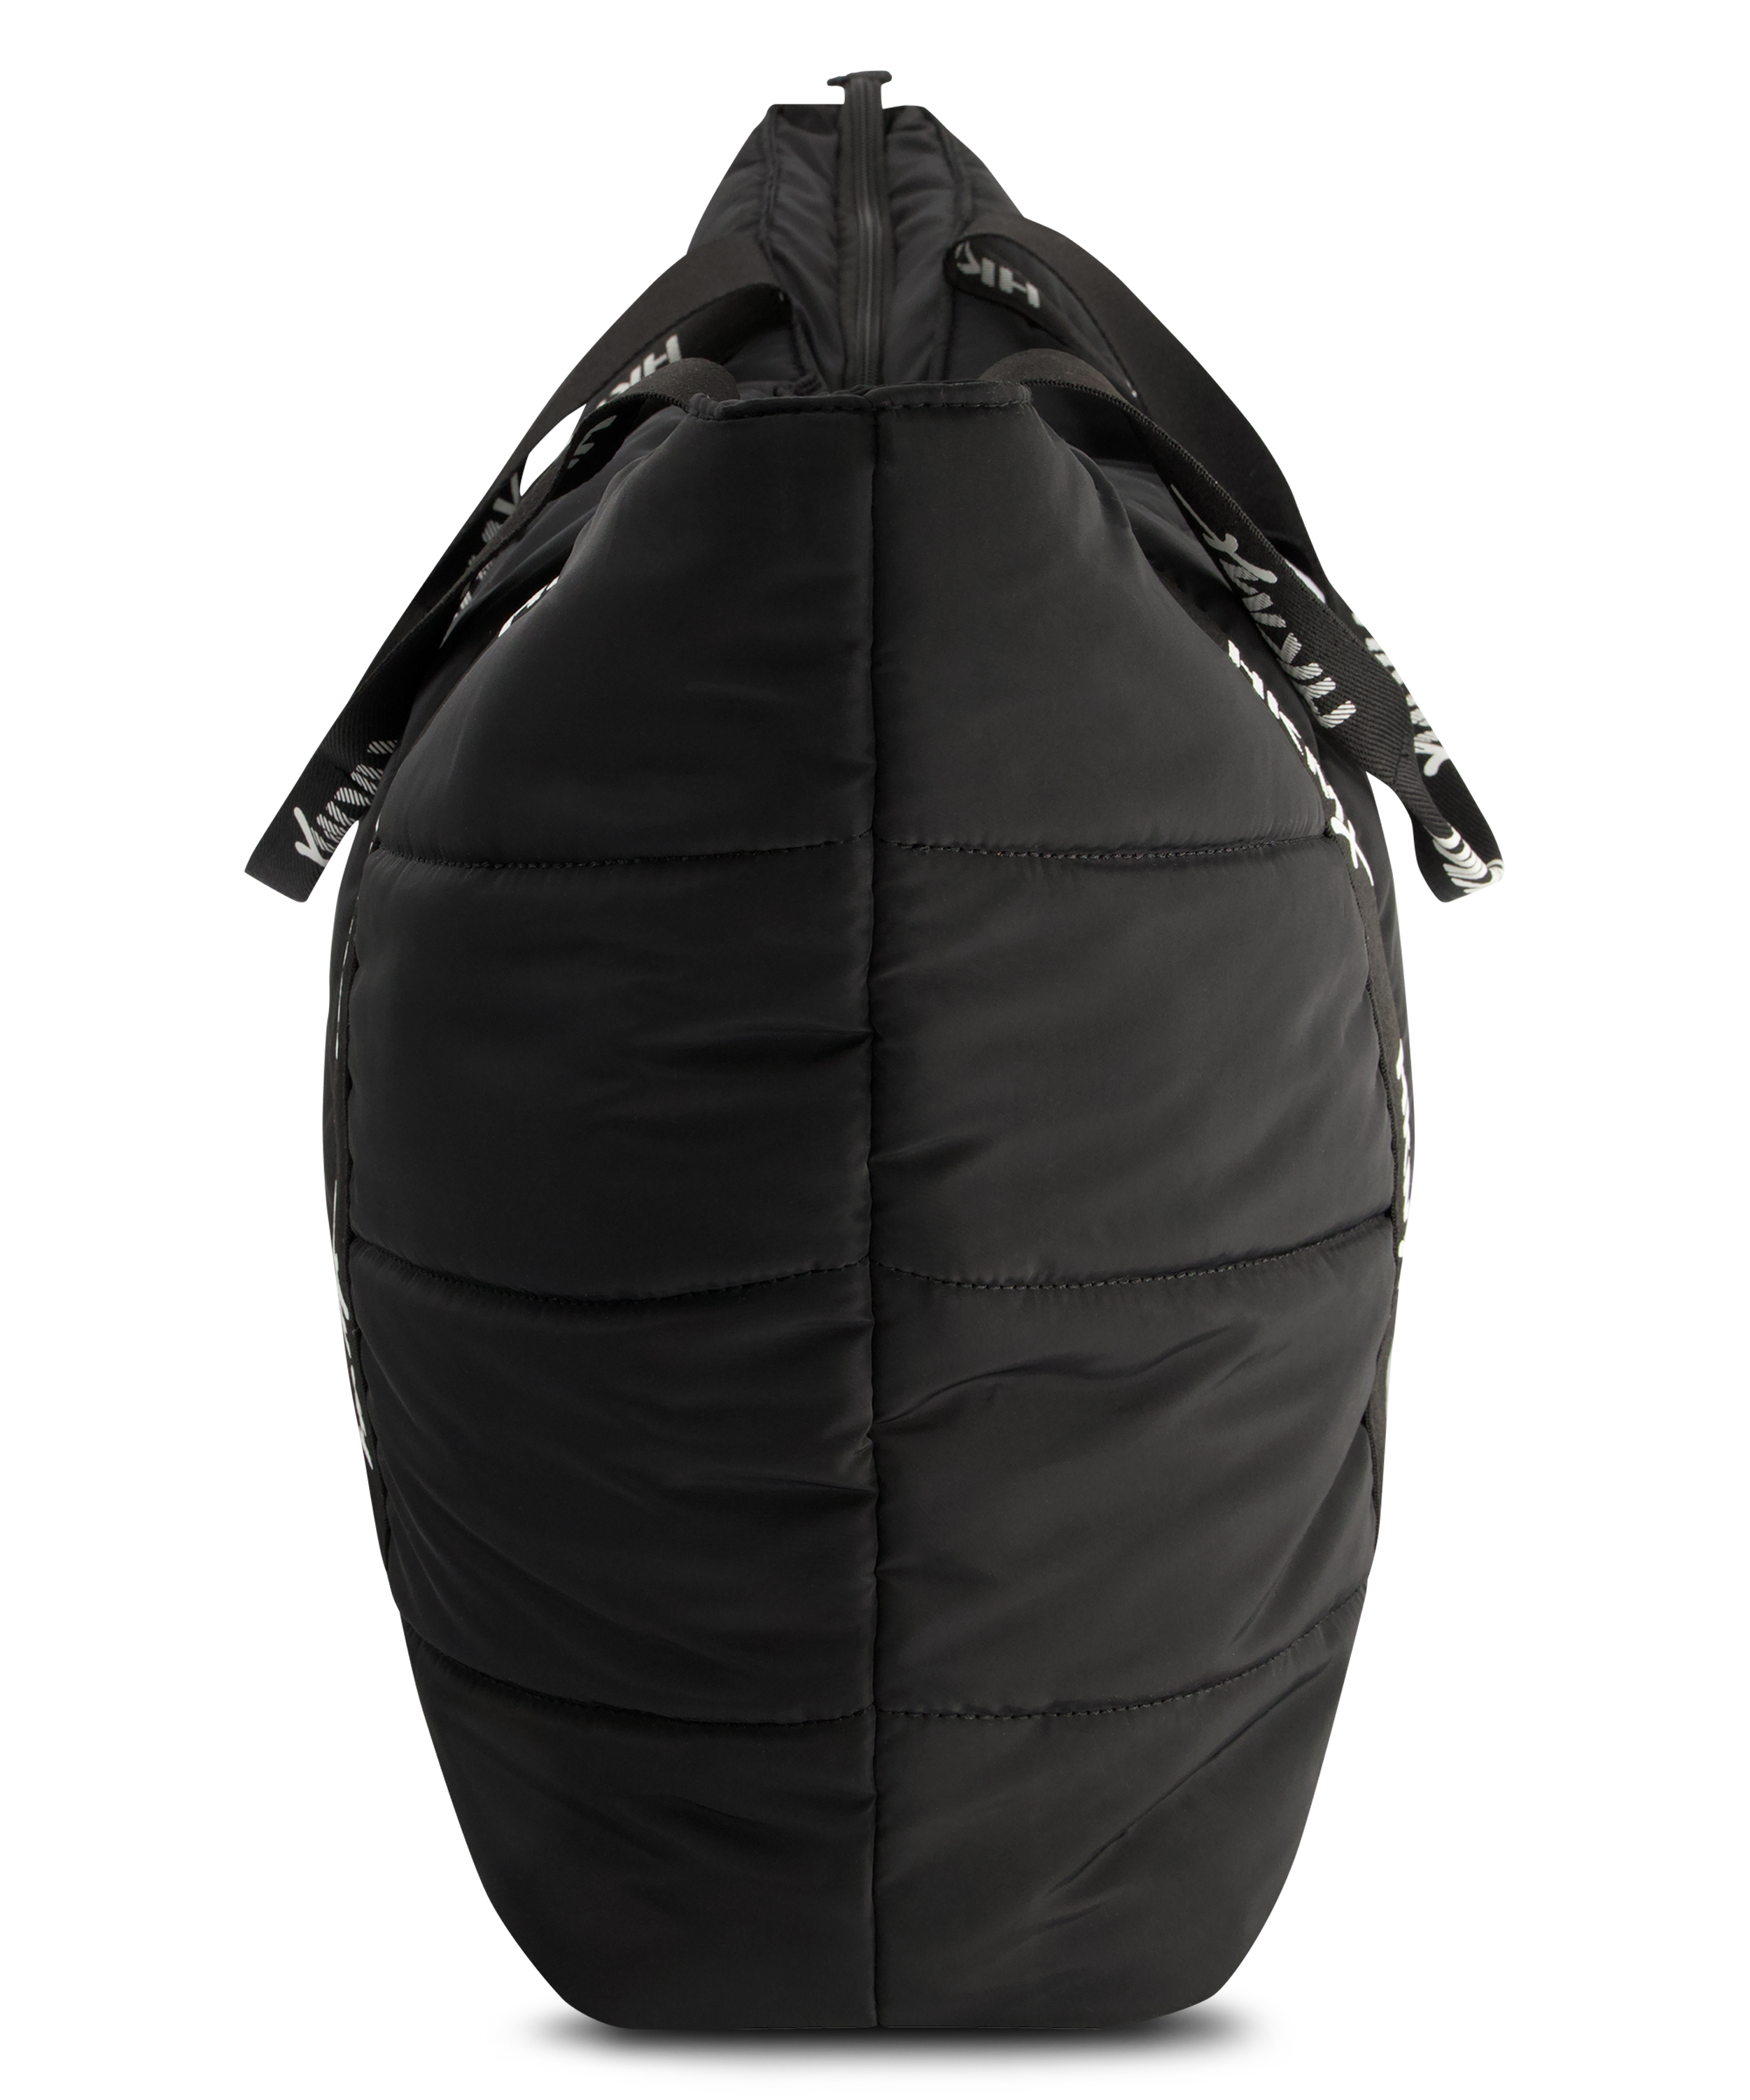 HKMX Tote Yoga bag, Black, main